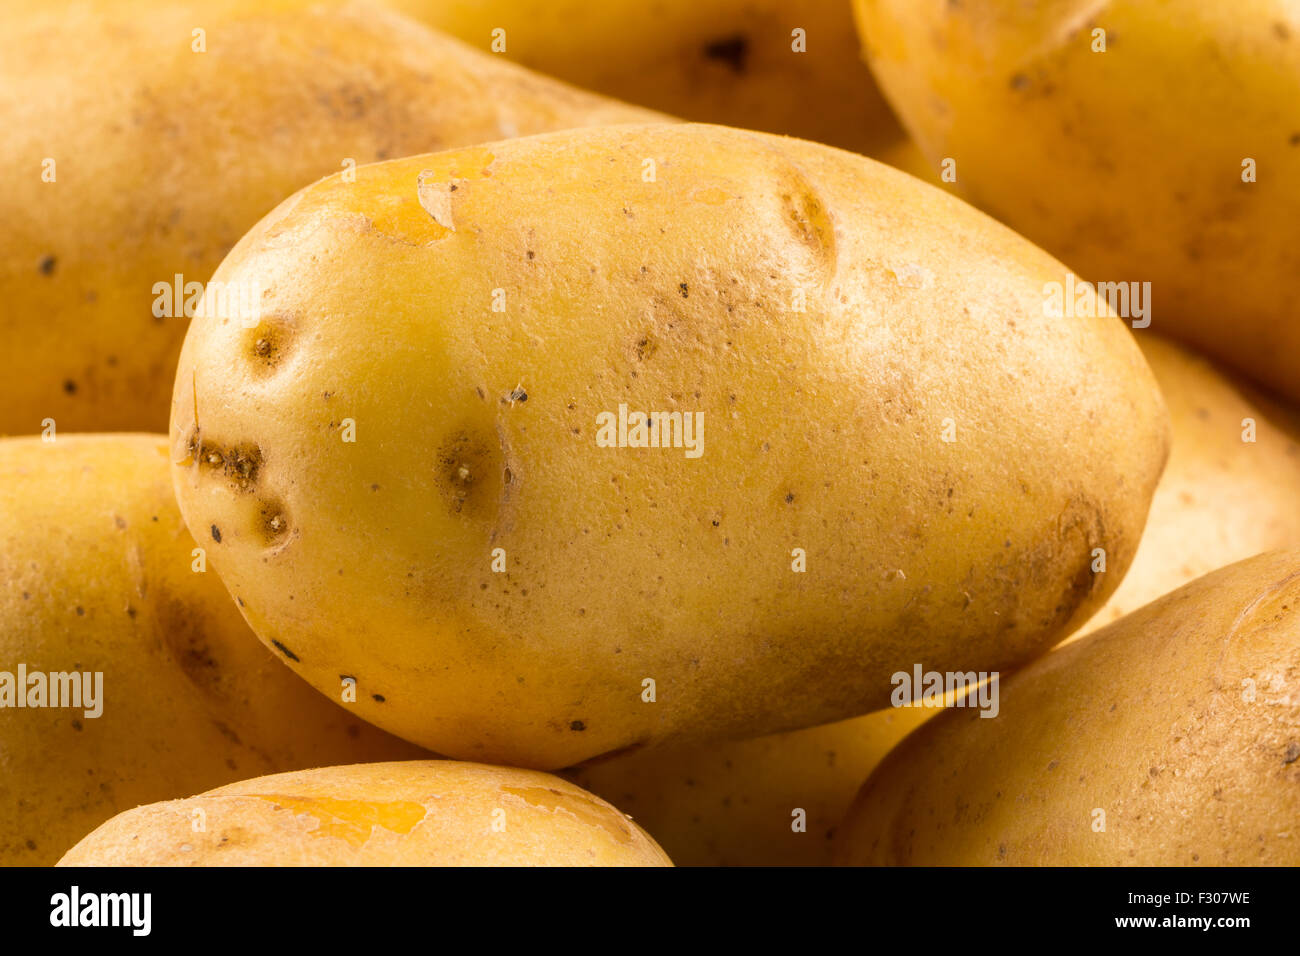 New potato isolated on white background close up Stock Photo